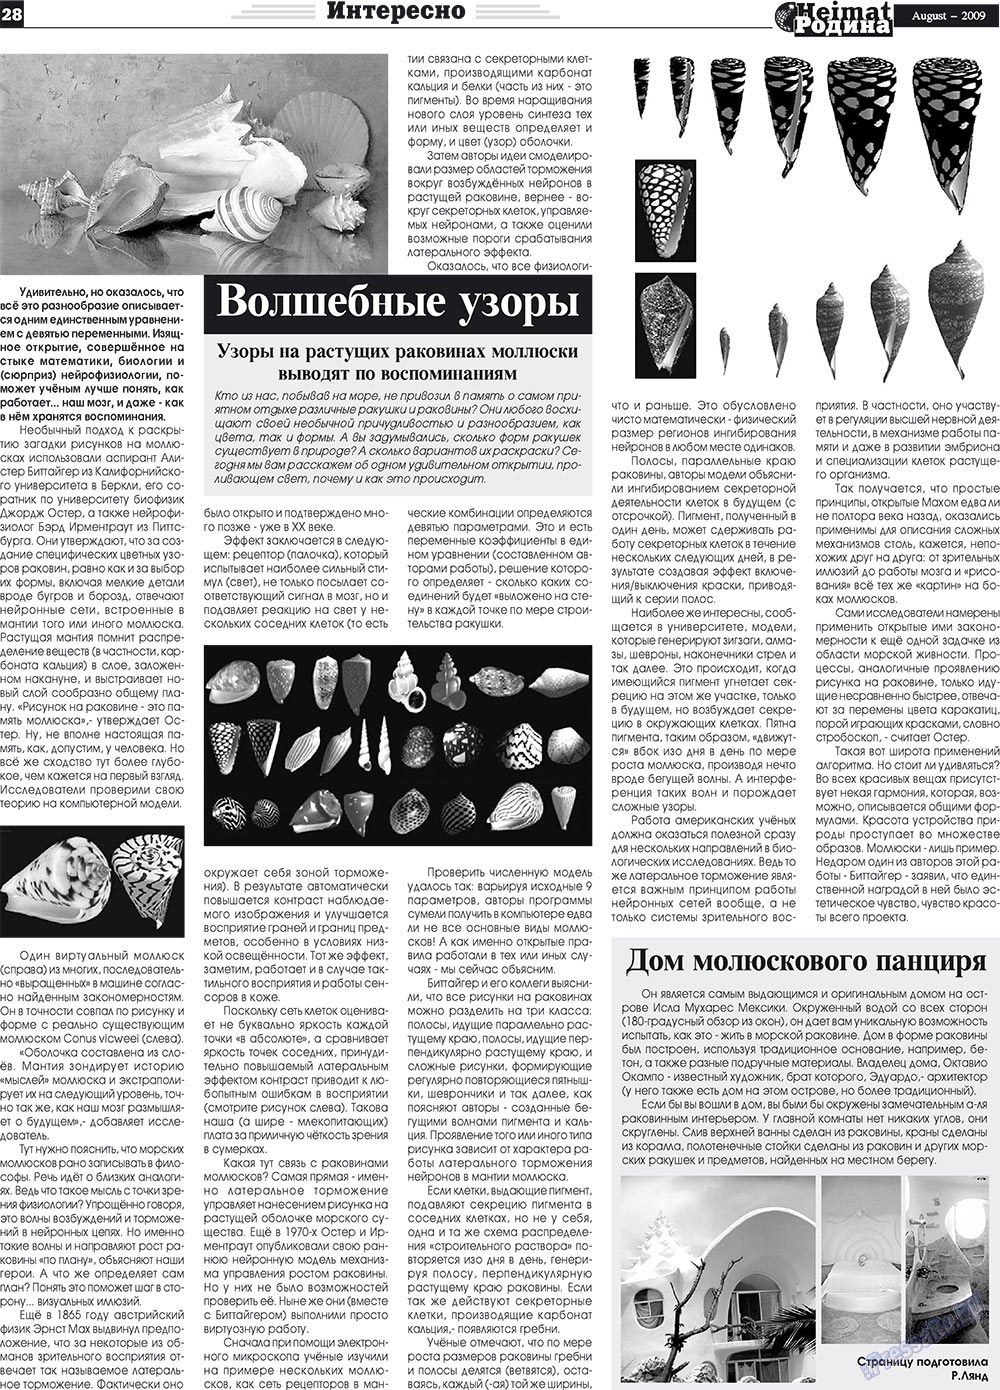 Heimat-Родина (газета). 2009 год, номер 8, стр. 28